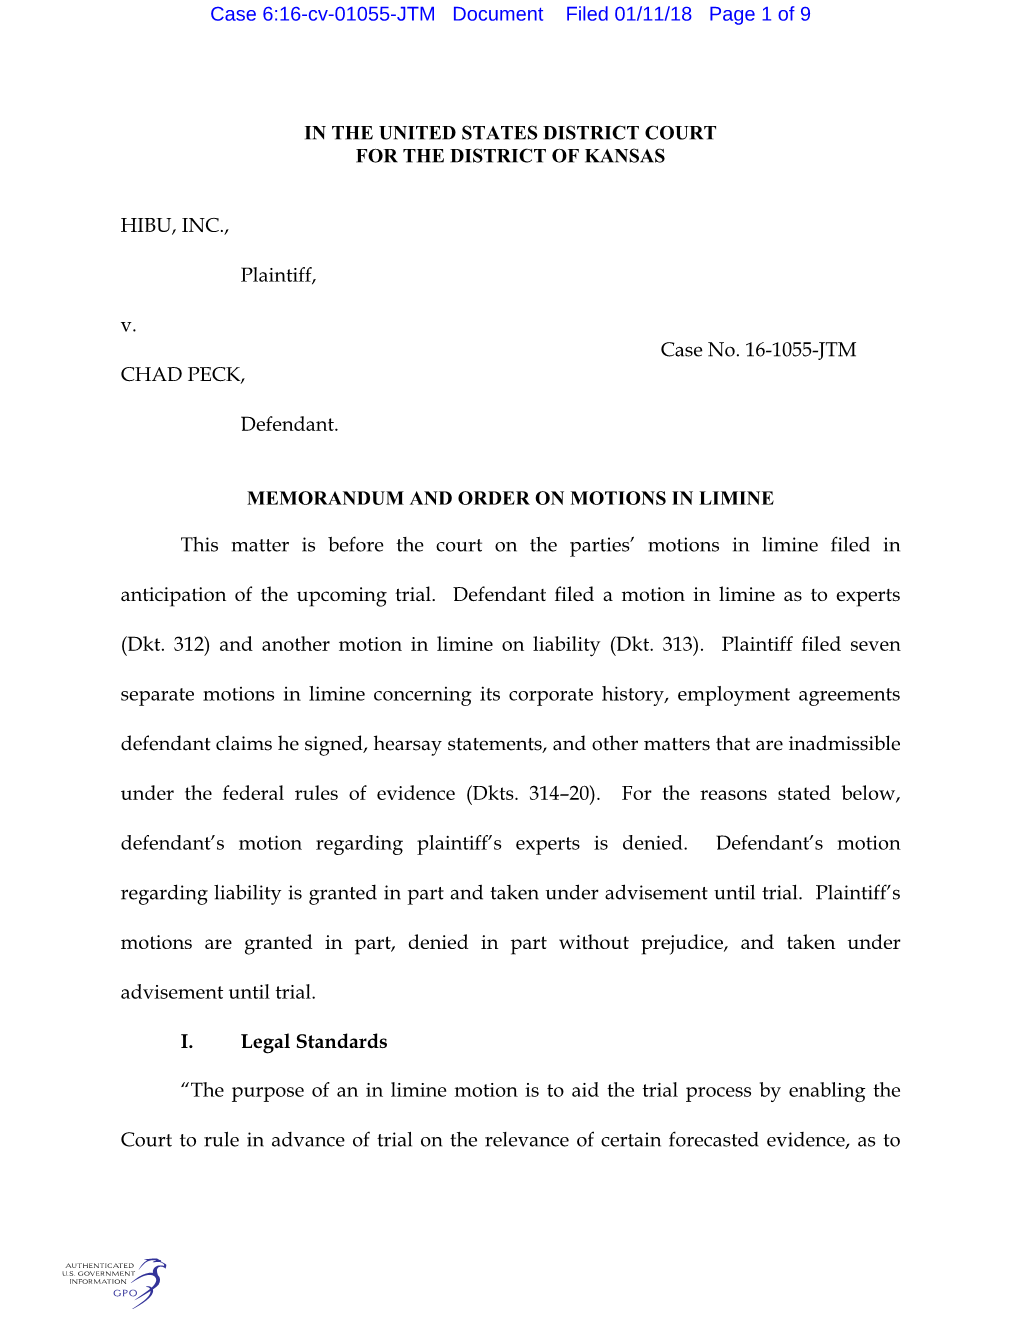 Case 6:16-Cv-01055-JTM Document Filed 01/11/18 Page 1 of 9